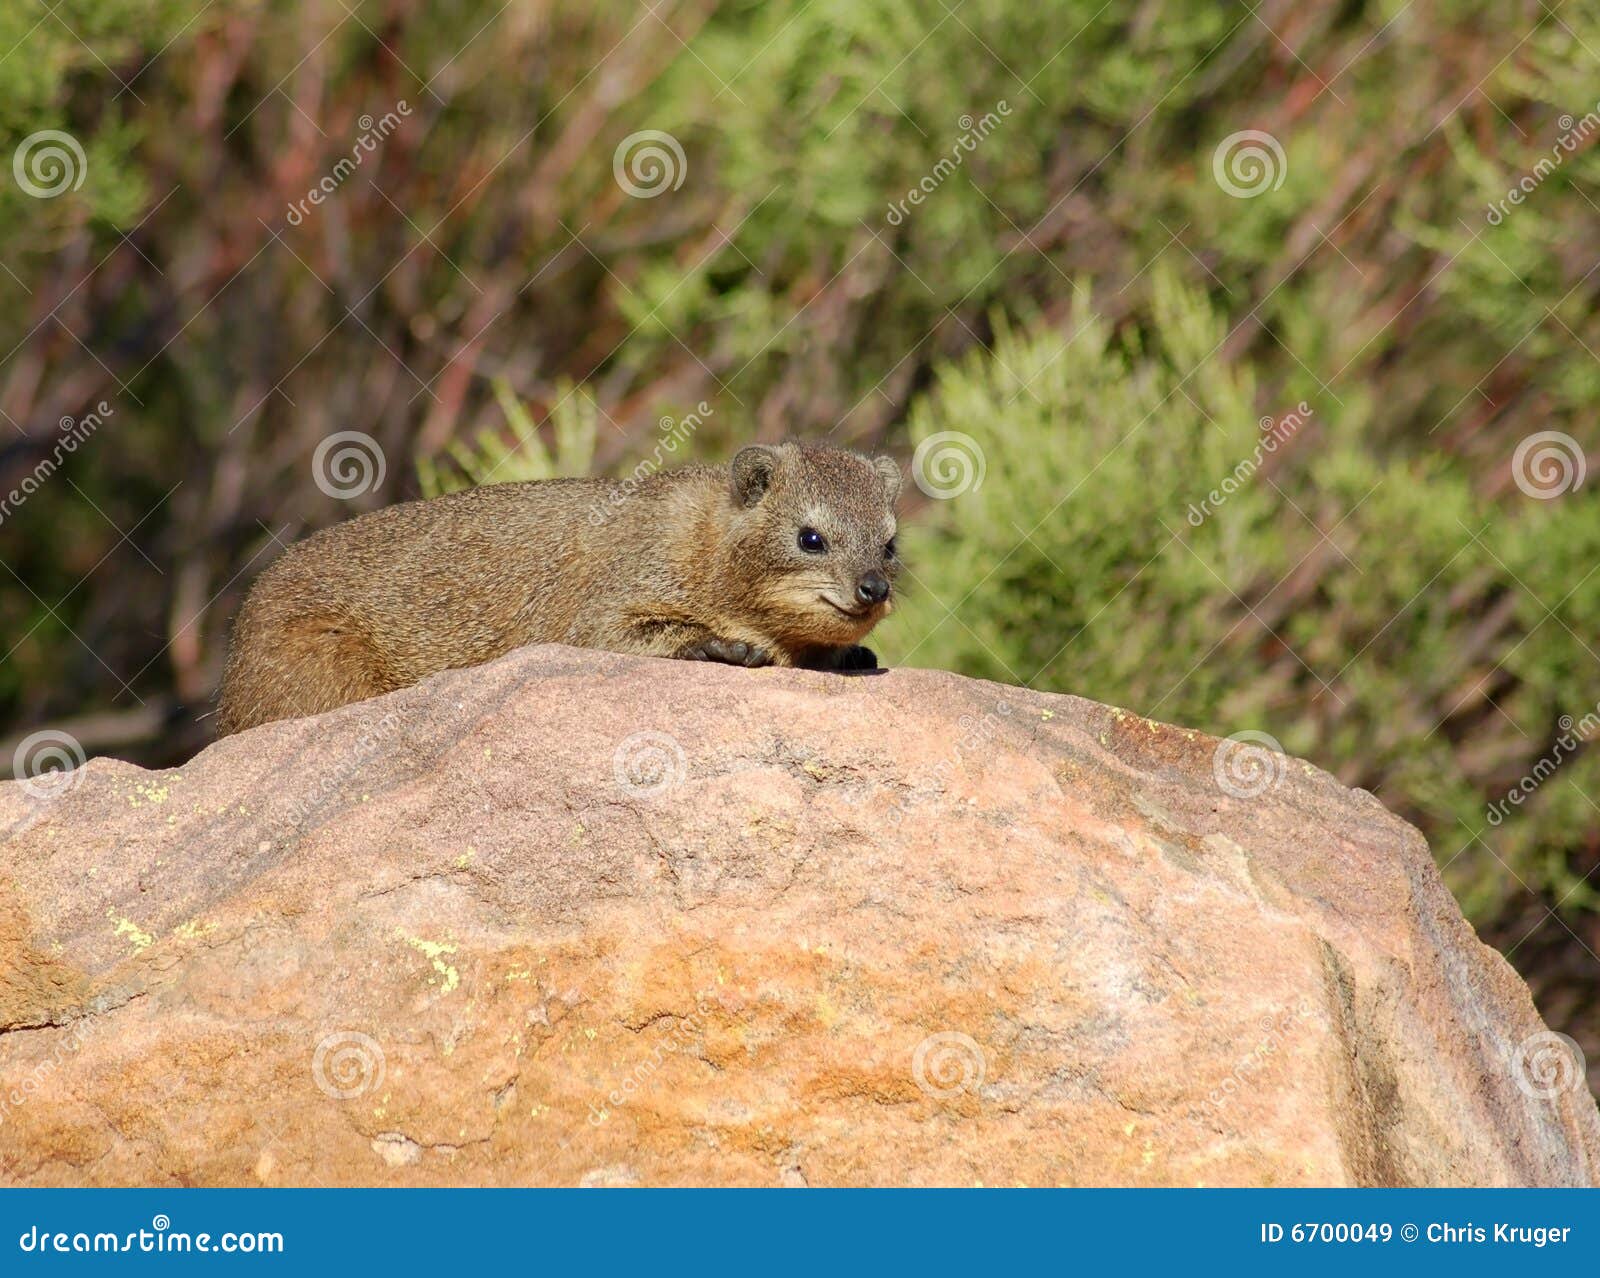 cape hyrax, or rock hyrax, (procavia capensis)